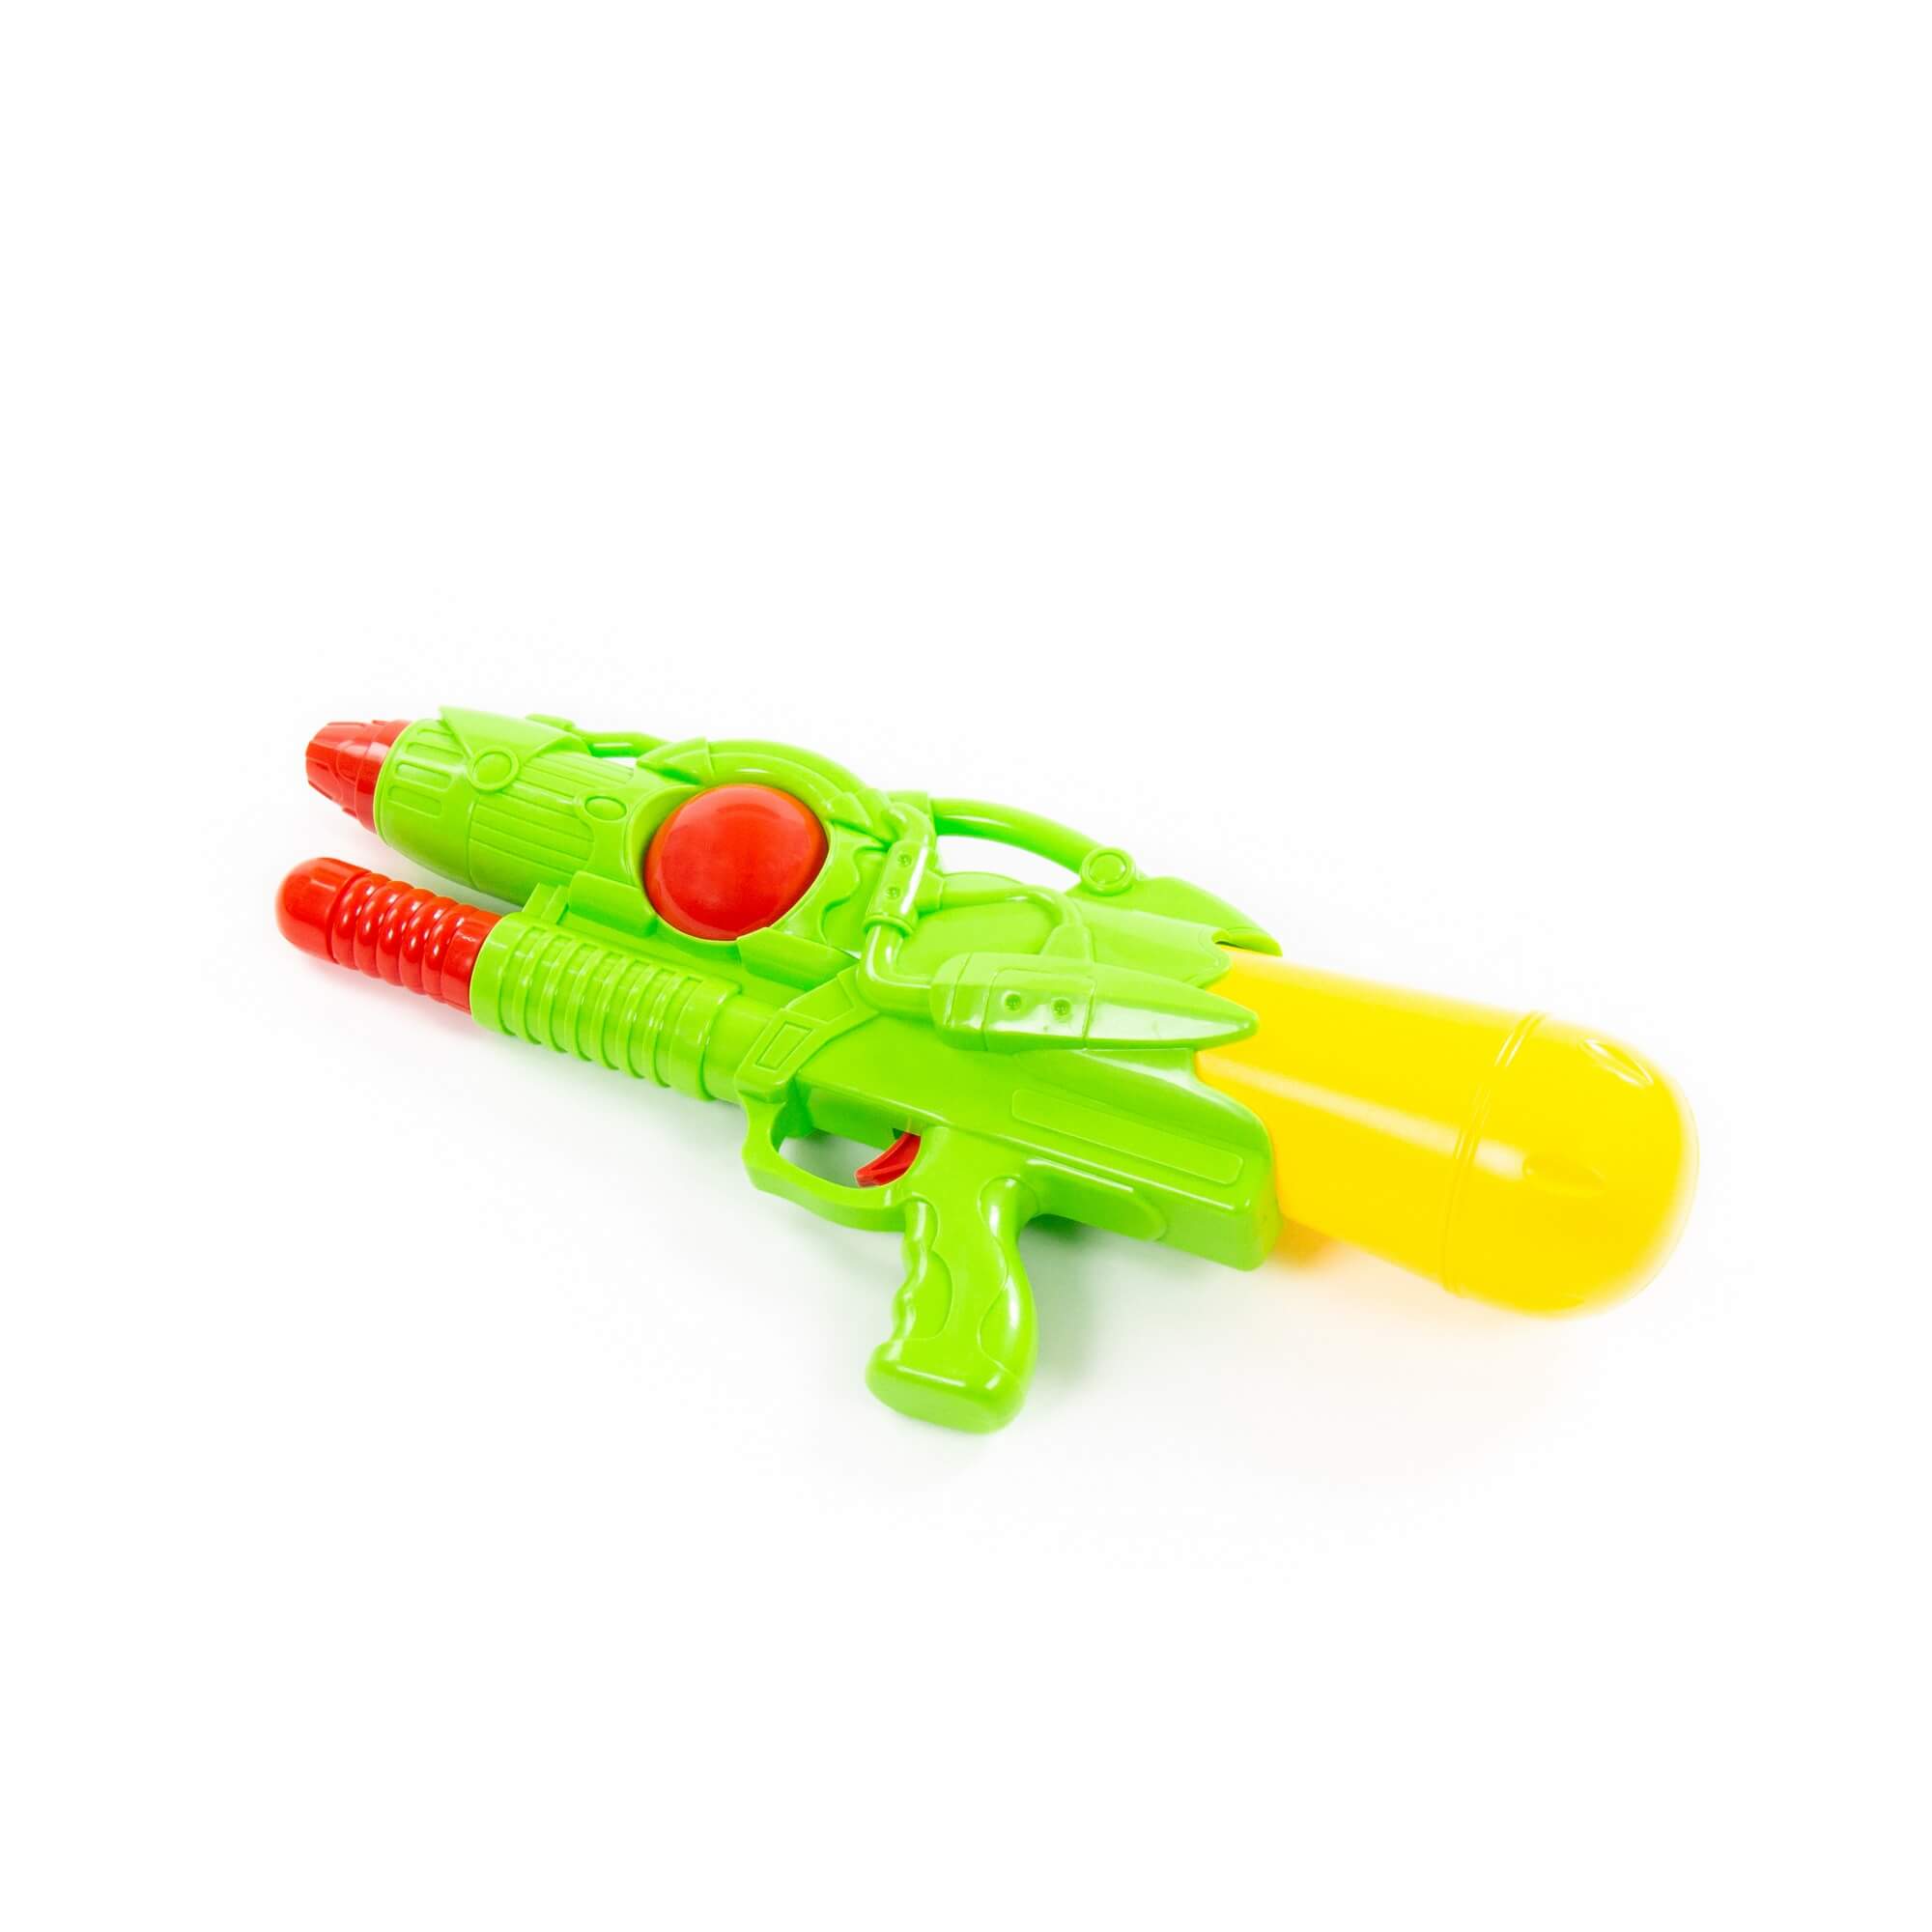 Водный пистолет игрушечный Полесье Аквадрайв №4 81520 плс водный пистолет полесье аквадрайв 7 33 см в пакете